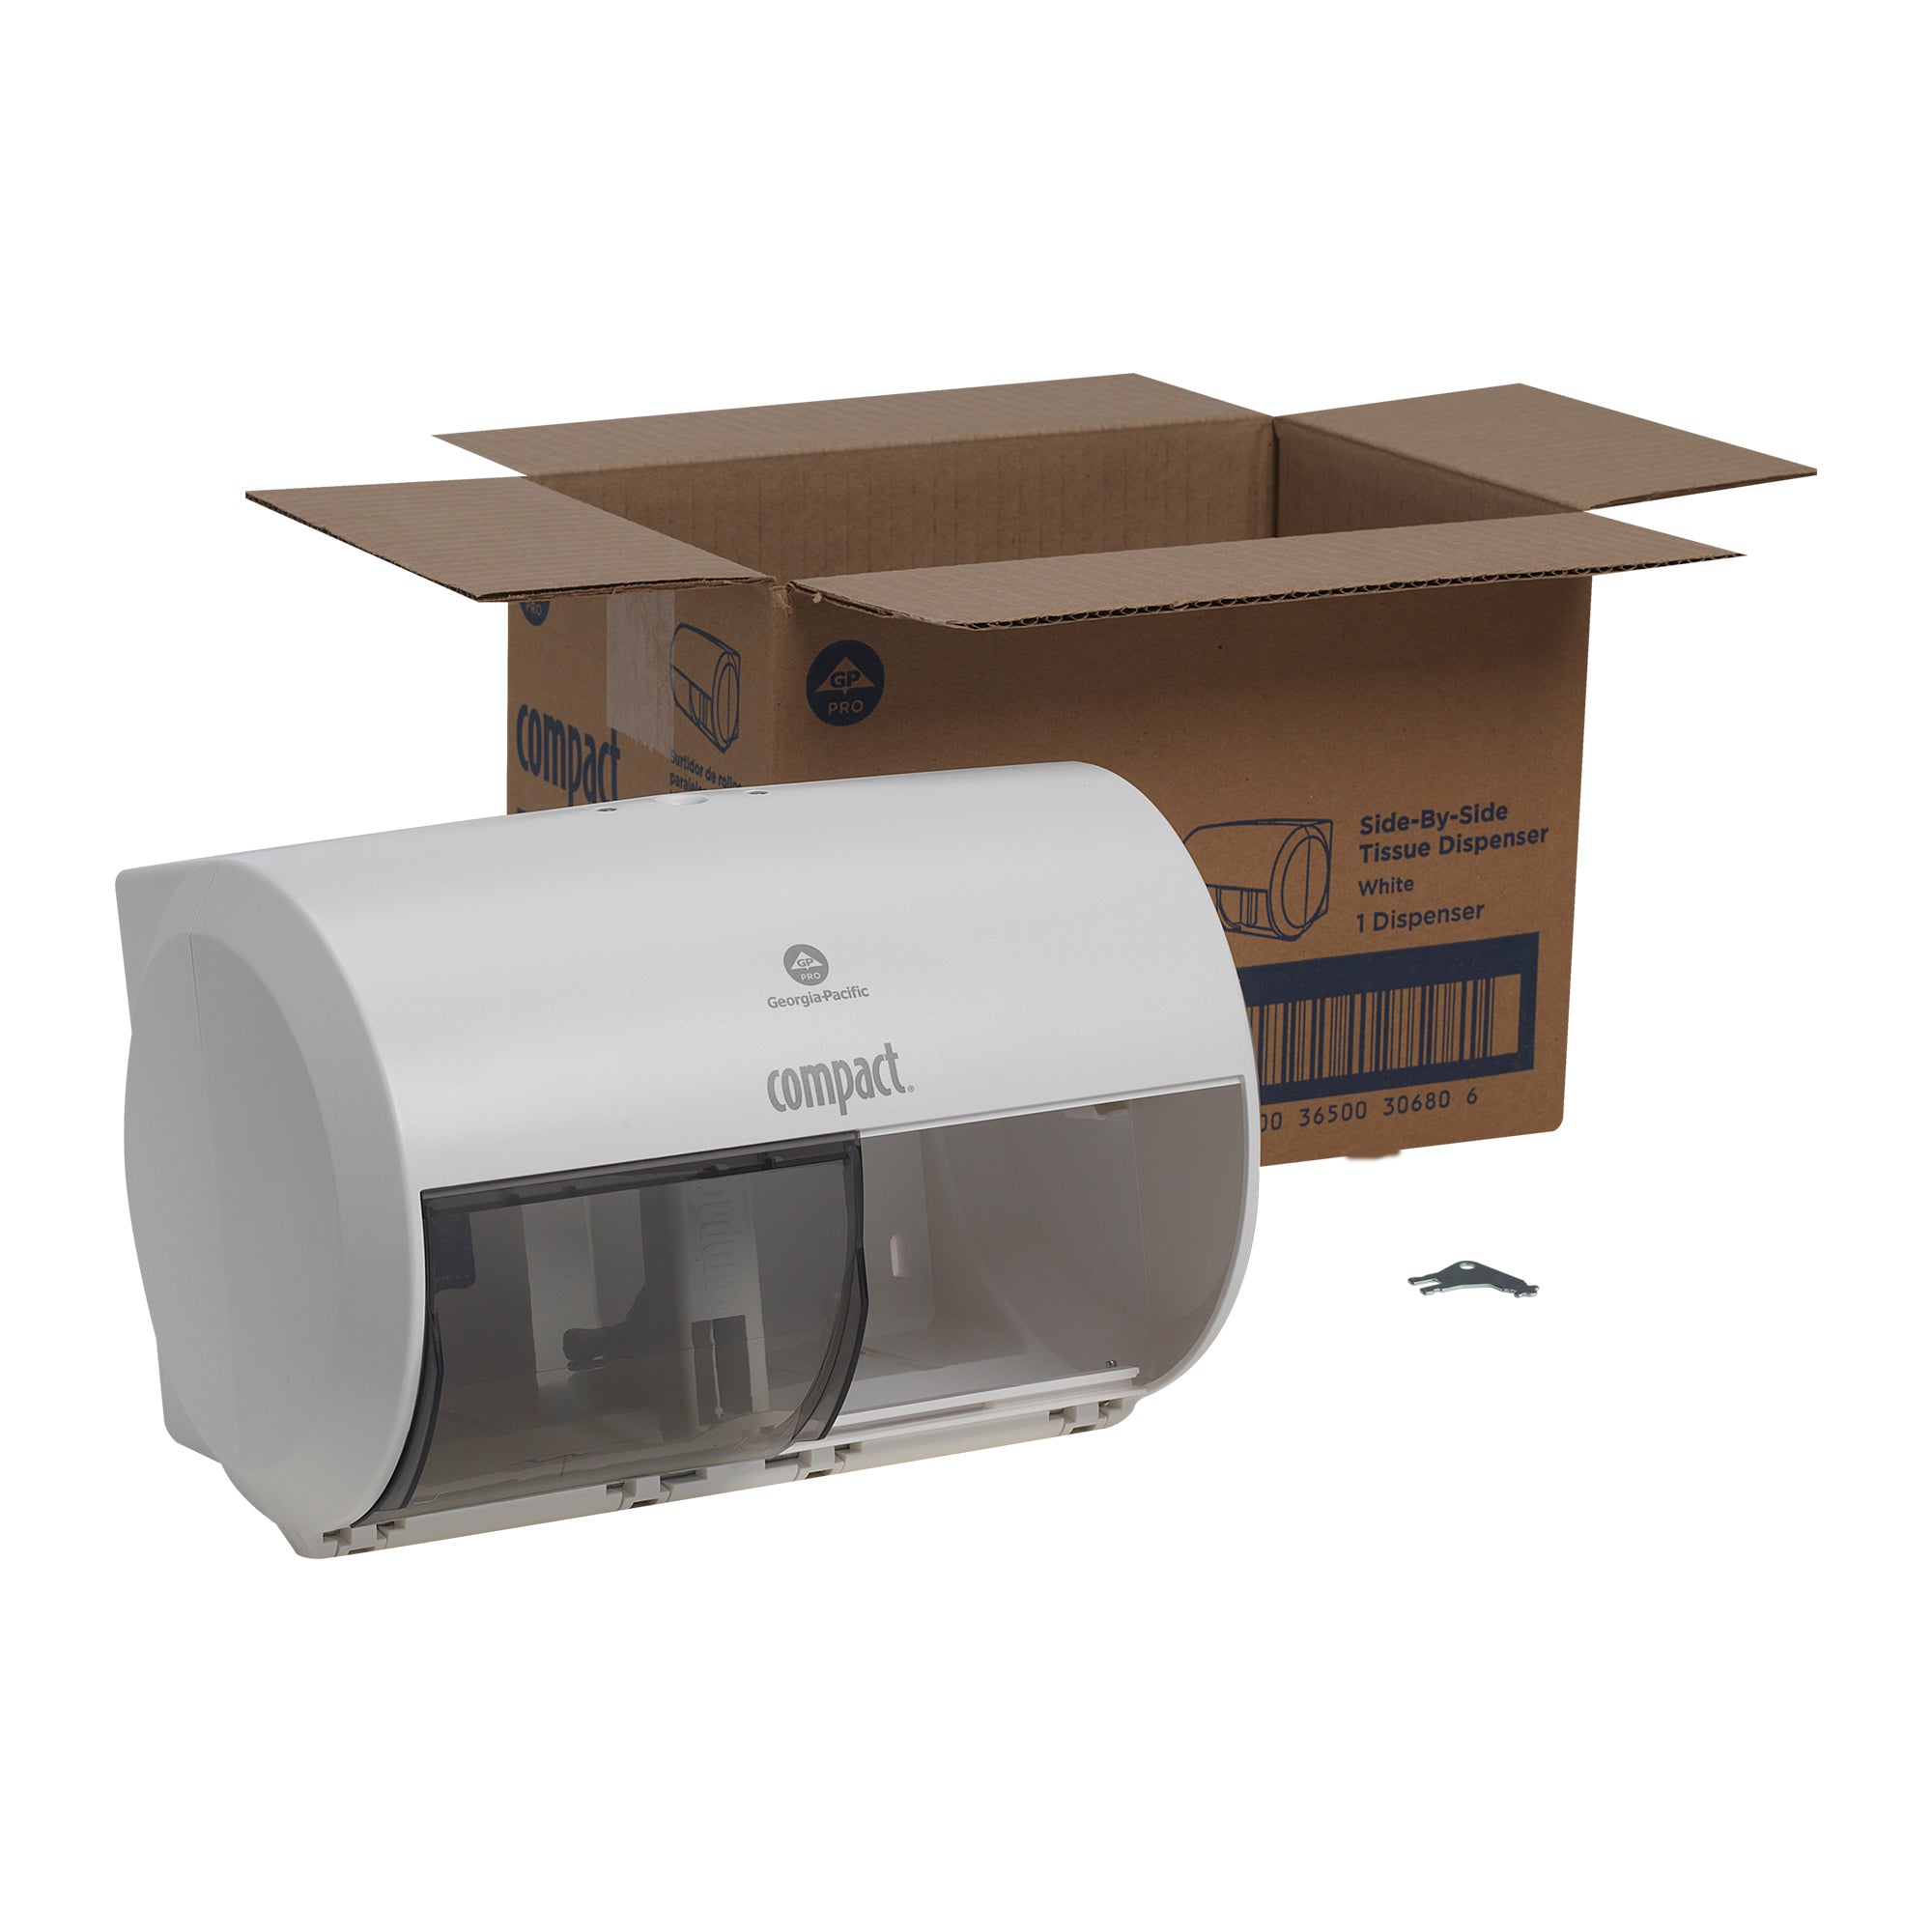 מתקן נייר טואלט בעל קיבולת גבוהה עם 2 גלילים זה לצד זה Compact® מבית GP PRO (ג'ורג'יה פסיפיק), לבן, מתקן אחד